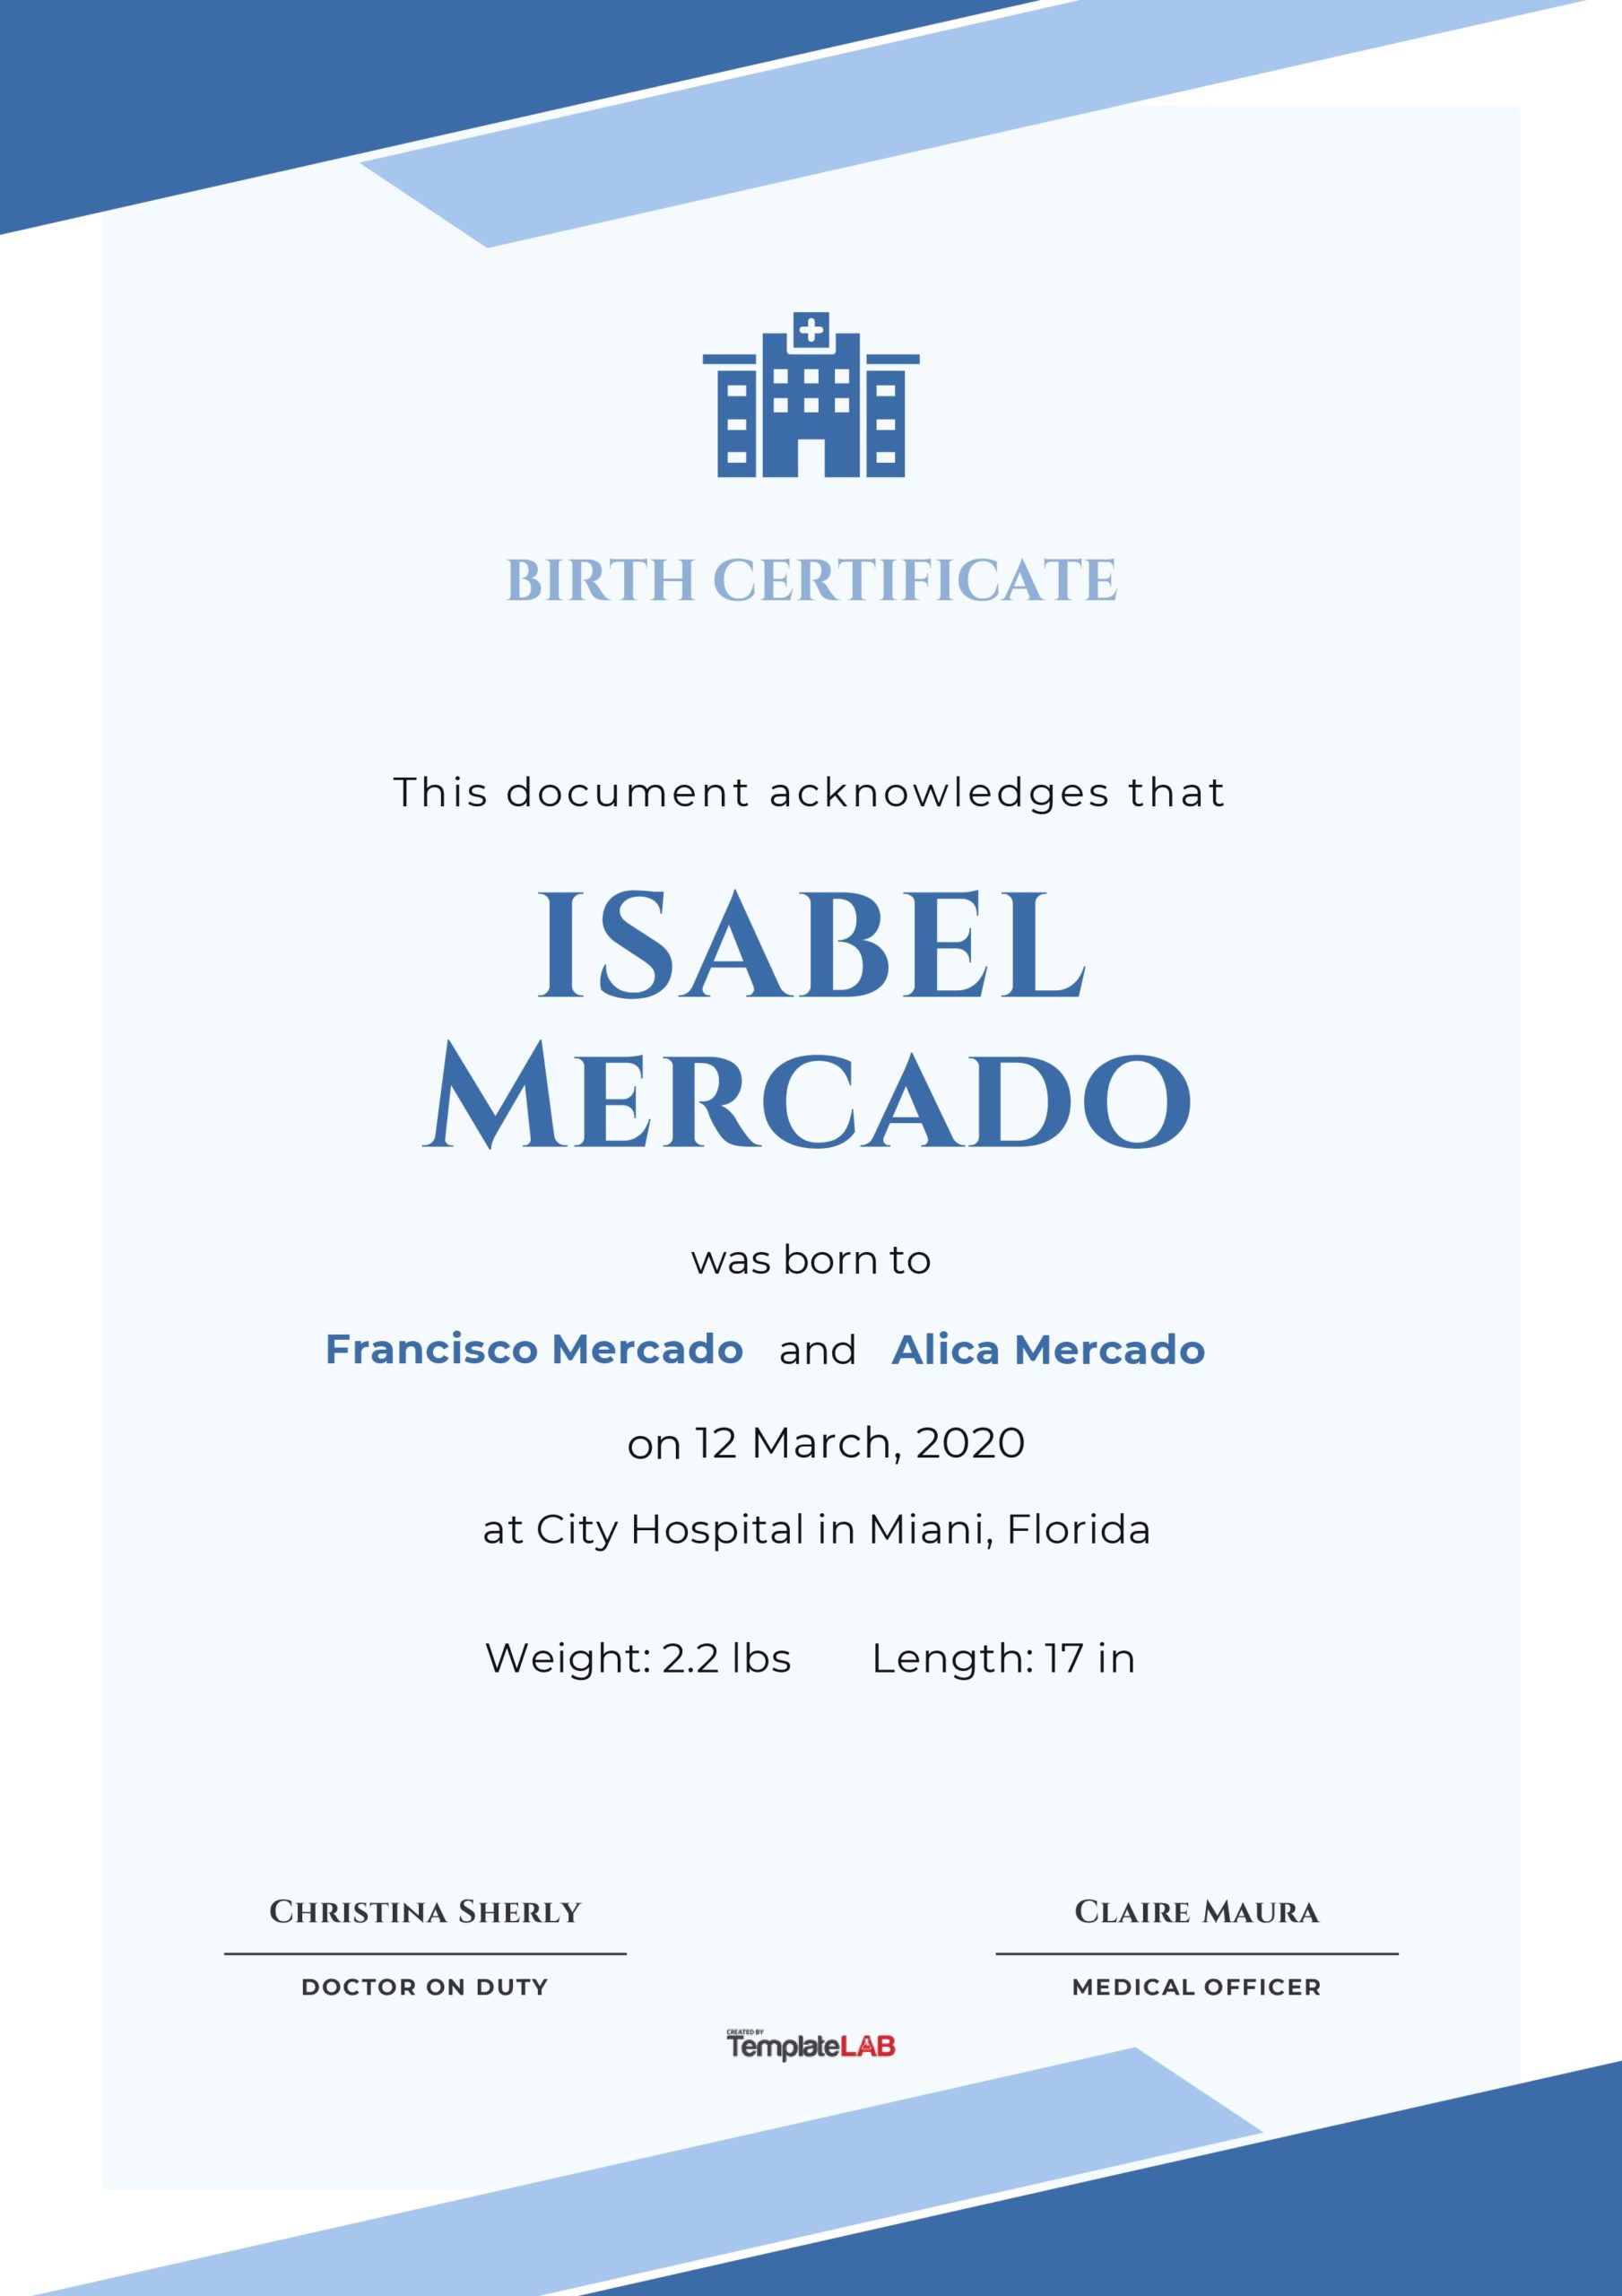 Plantilla de certificado de nacimiento gratis 17